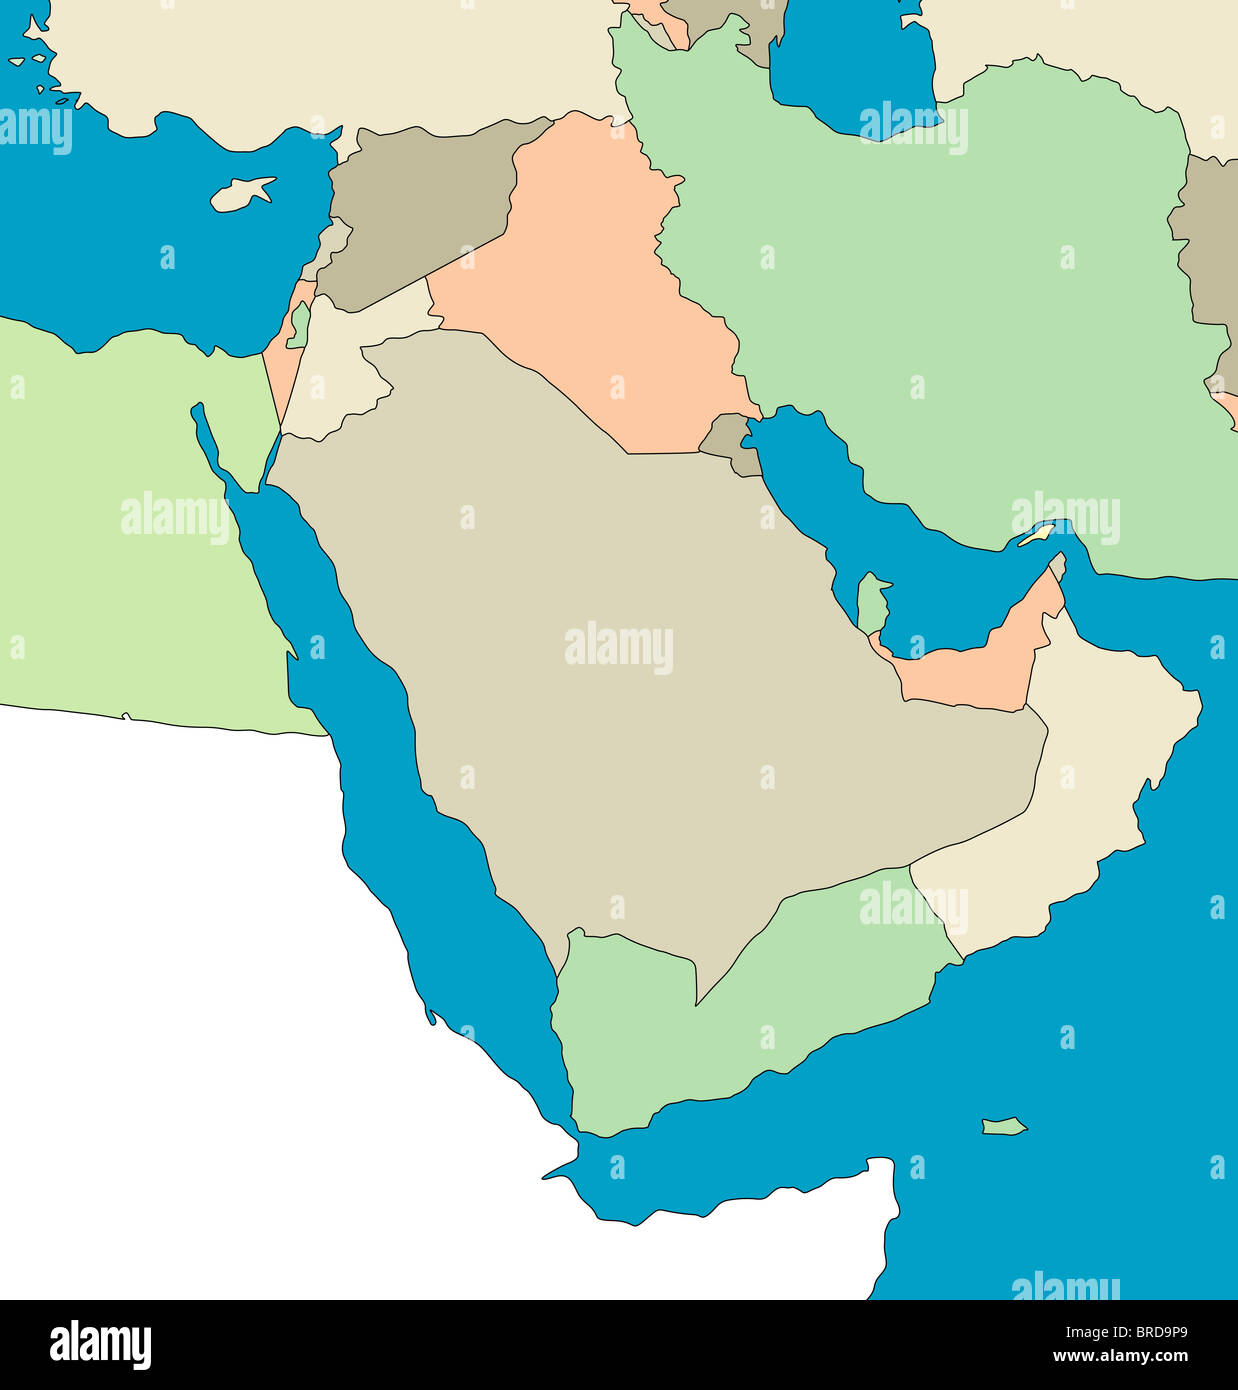 Stilisierte Landkarte von der Region des Nahen Ostens. keine Untertitel. Alle auf weißem Hintergrund. Stockfoto